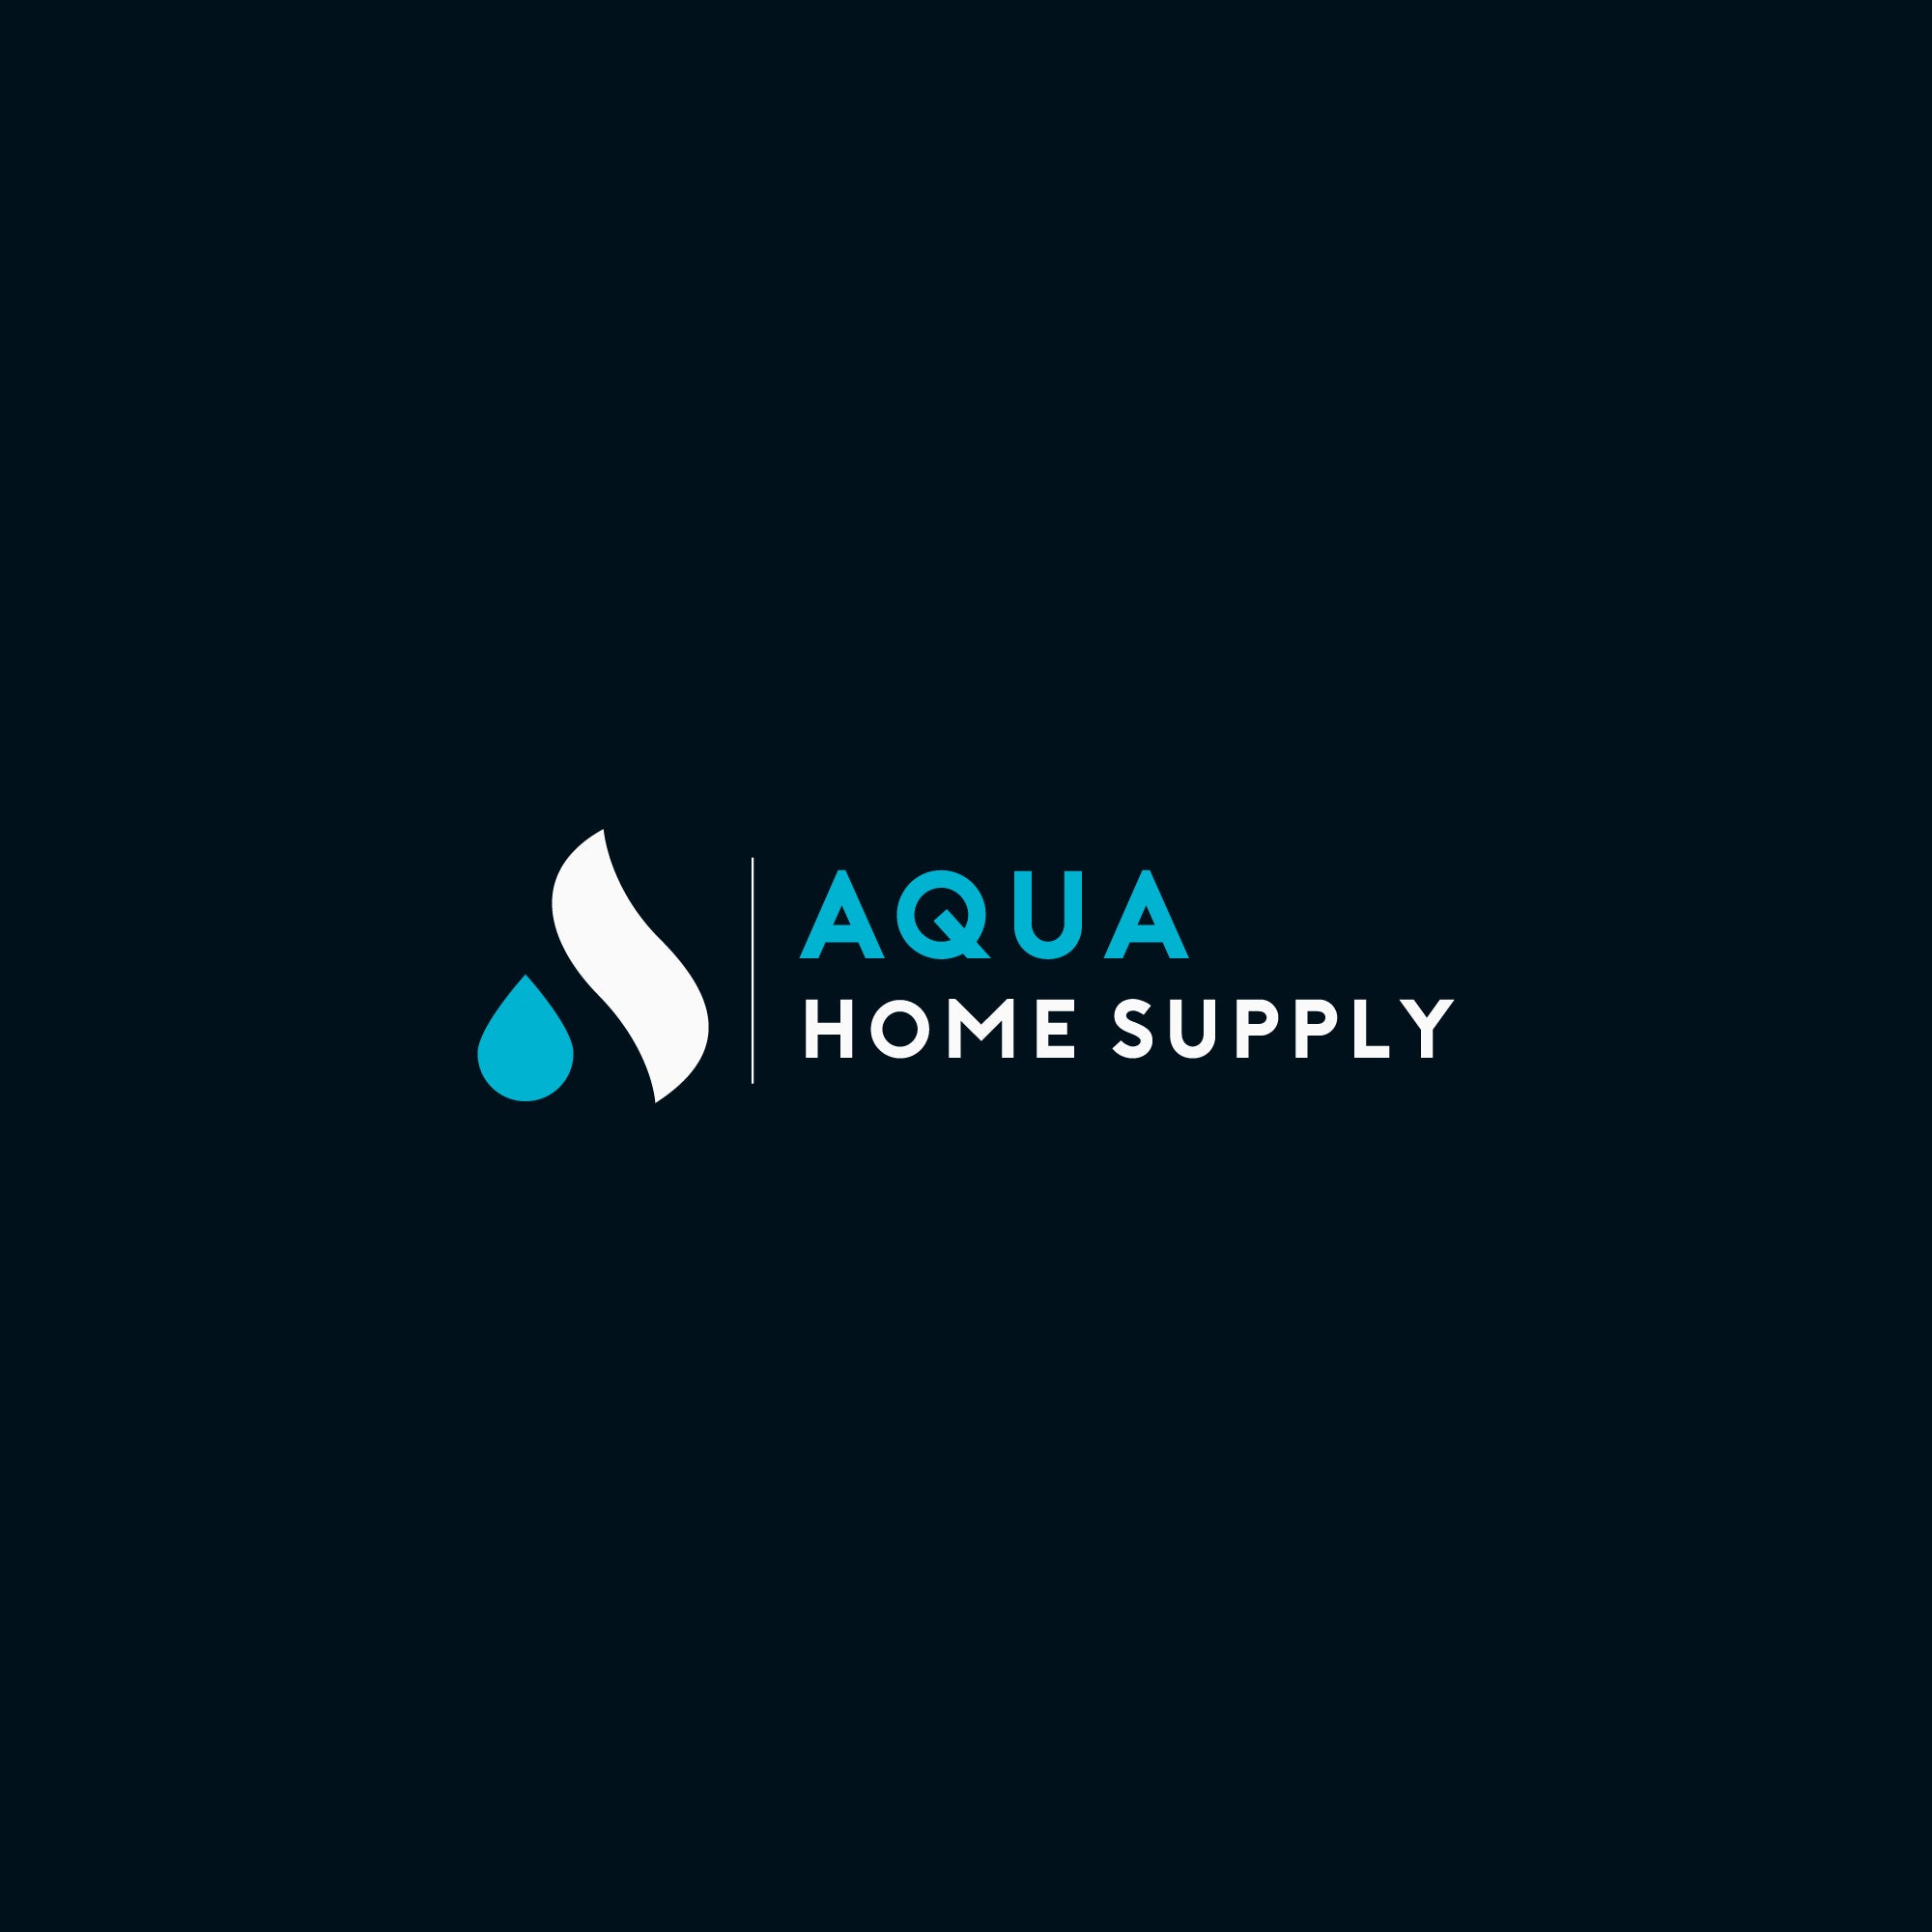 Aqua Home Supply